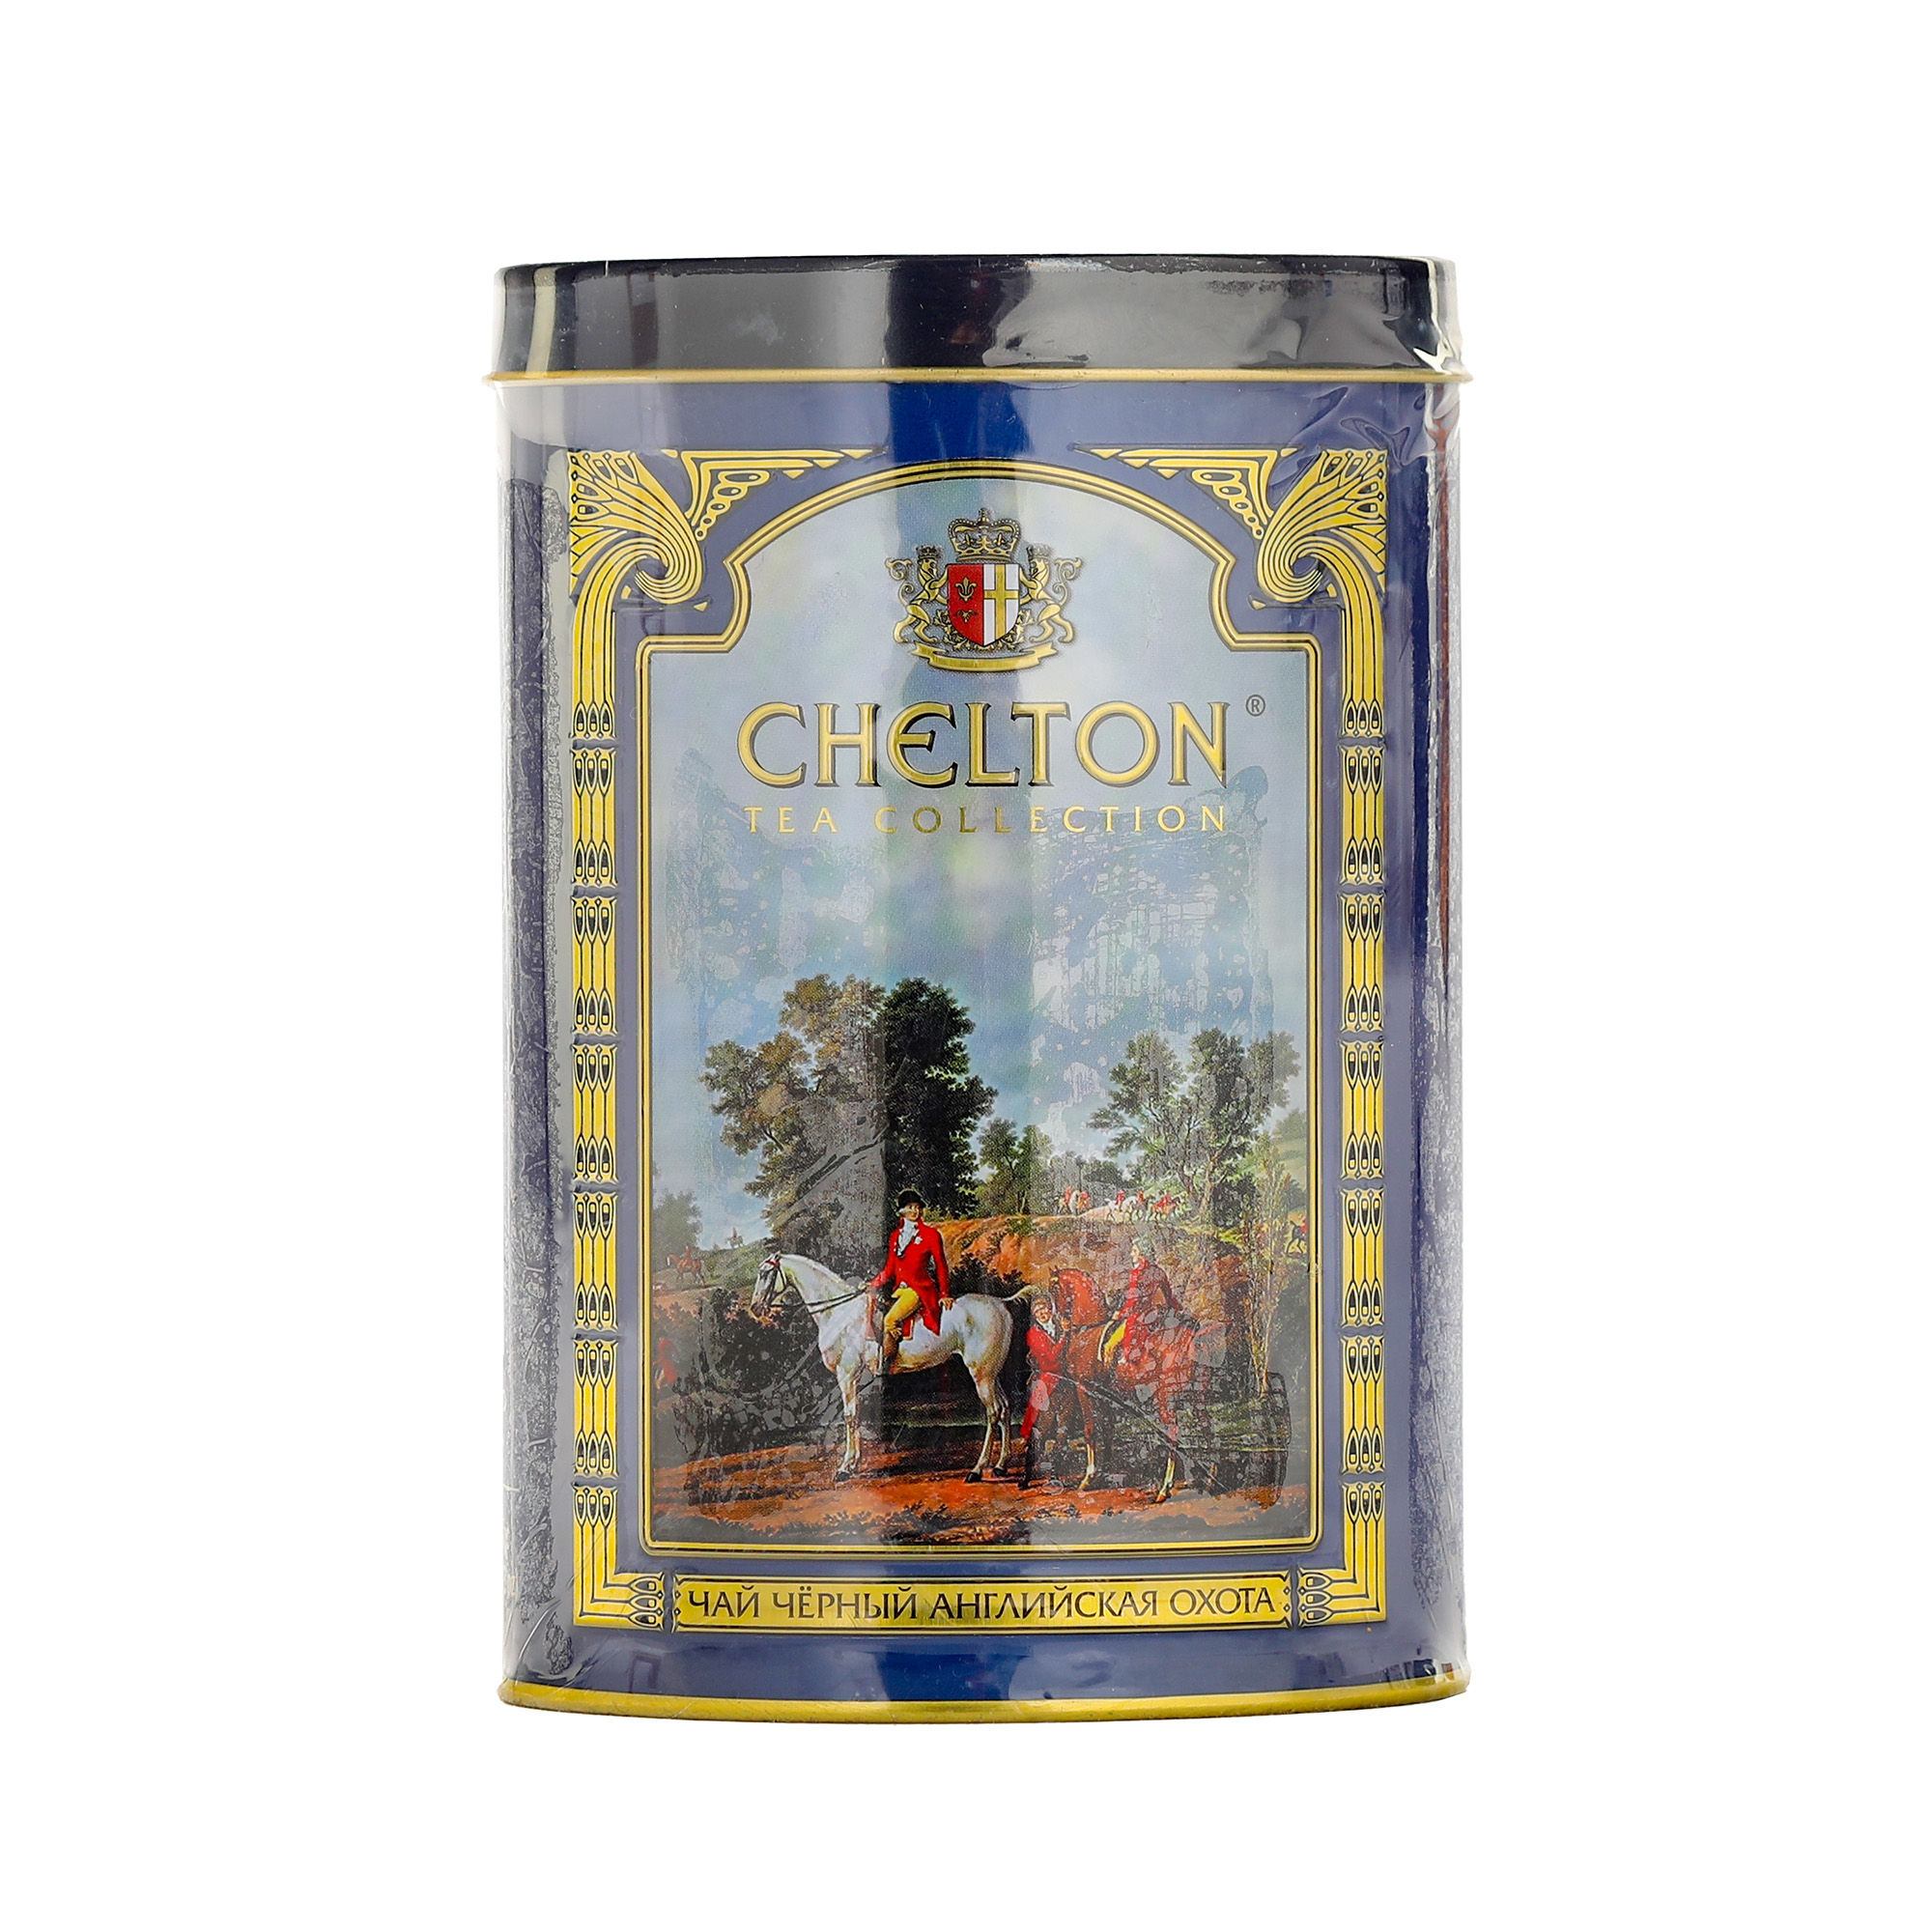 Чай Chelton Английская охота крупнолистовой, 100 г чай крупнолистовой yantra ора 200 г